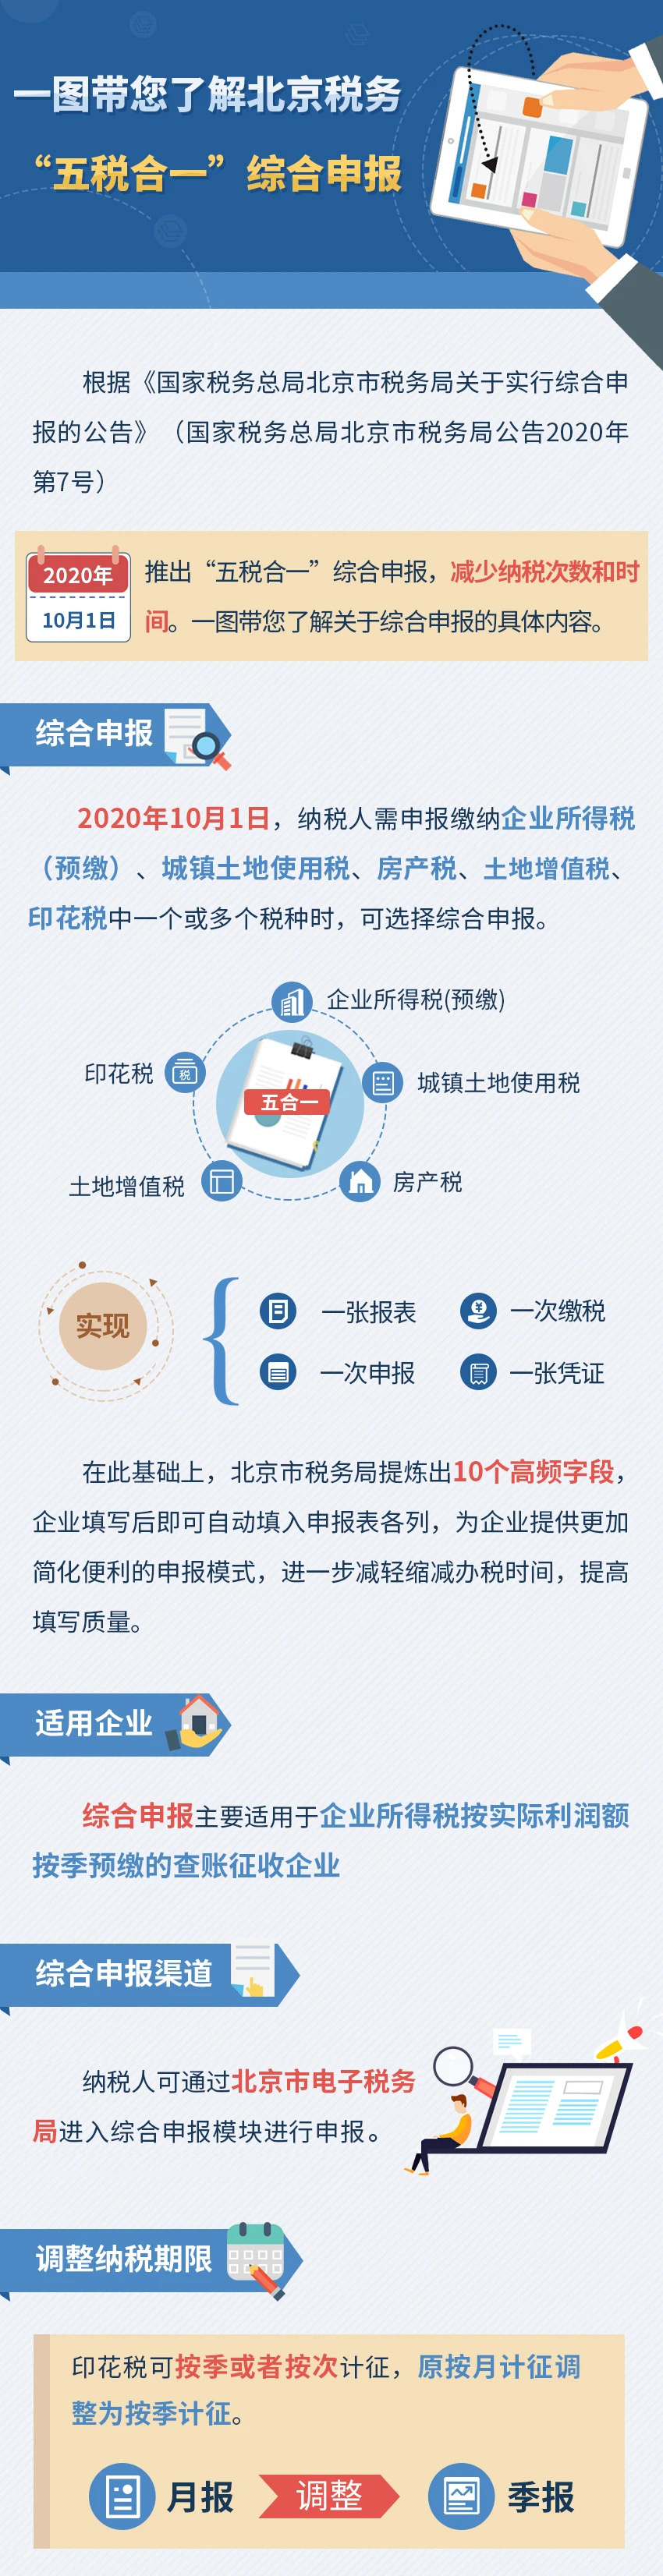 一圖帶您了解北京稅務“五稅合一”綜合申報